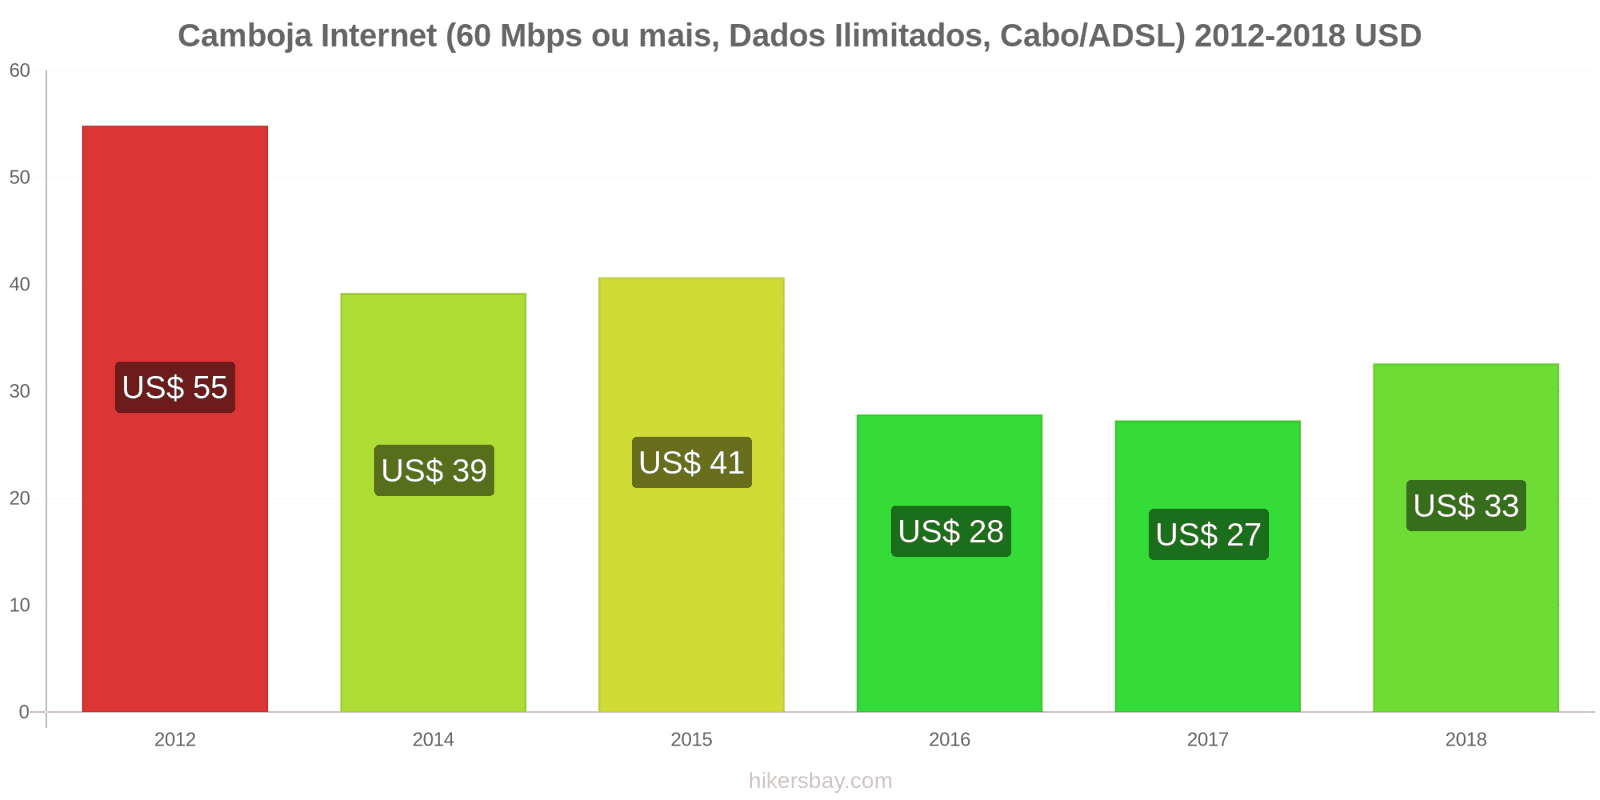 Camboja mudanças de preços Internet (60 Mbps ou mais, dados ilimitados, cabo/ADSL) hikersbay.com